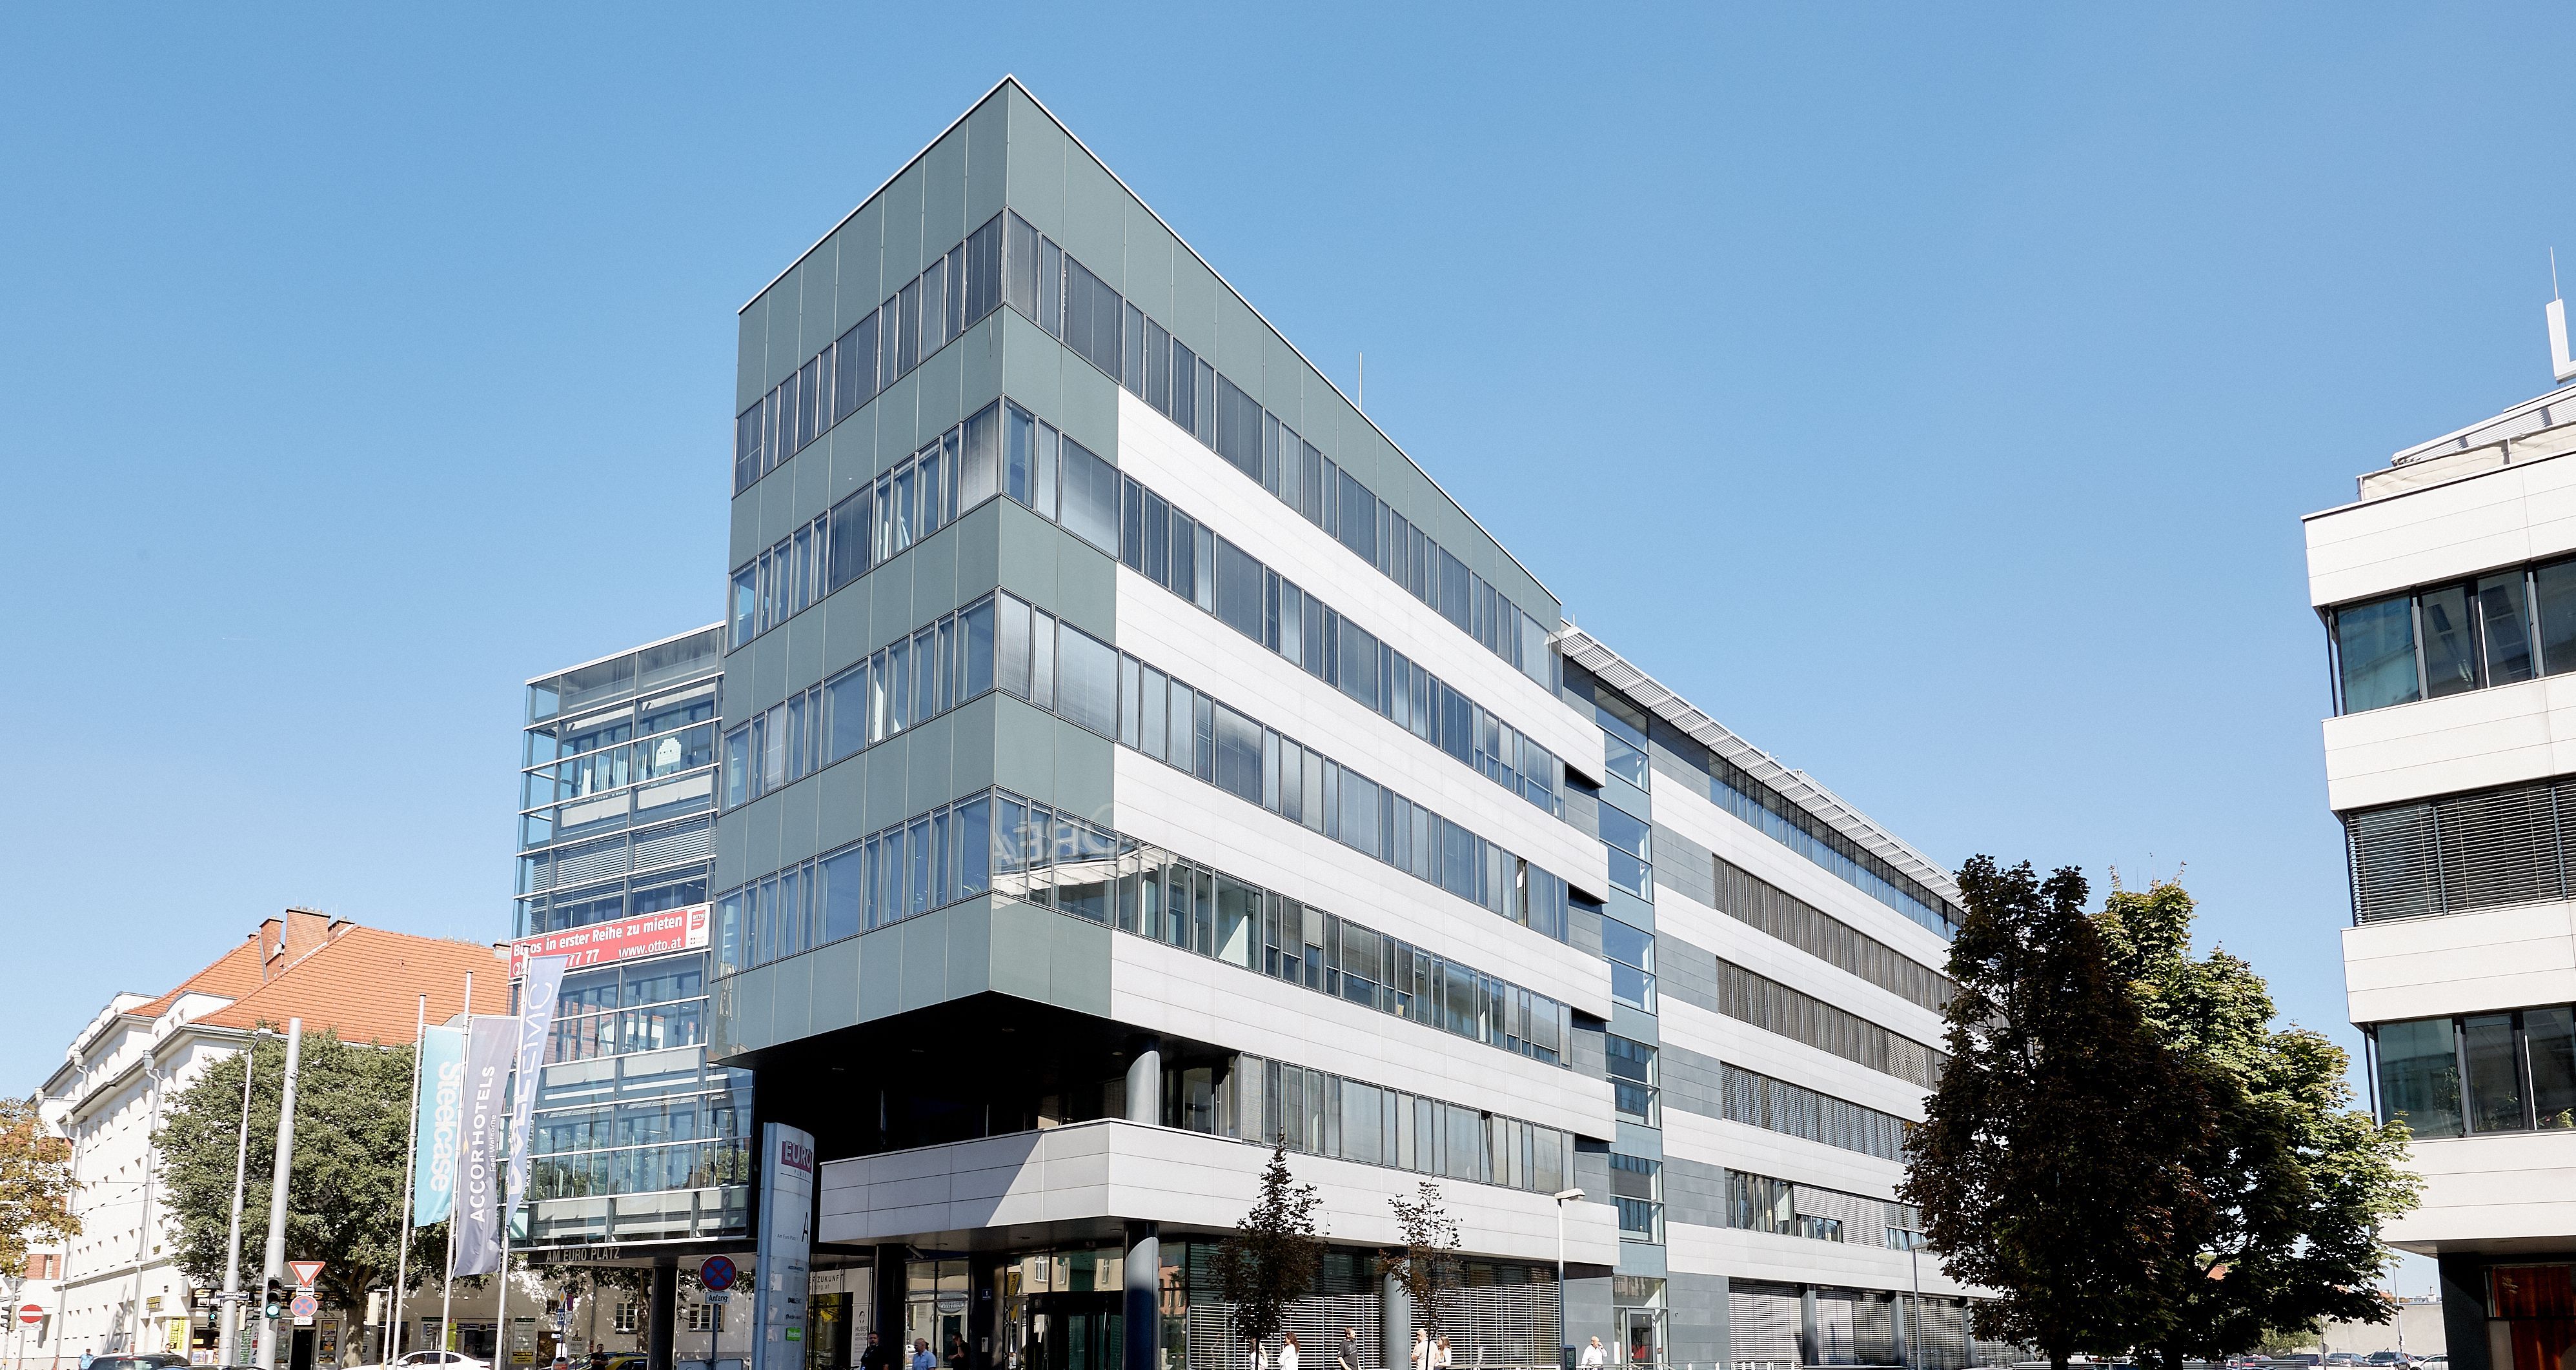 Foto: modernes Bürogebäude mit sechs Geschoßen und moderner Alu-Glasfassade in urbaner Umgebung